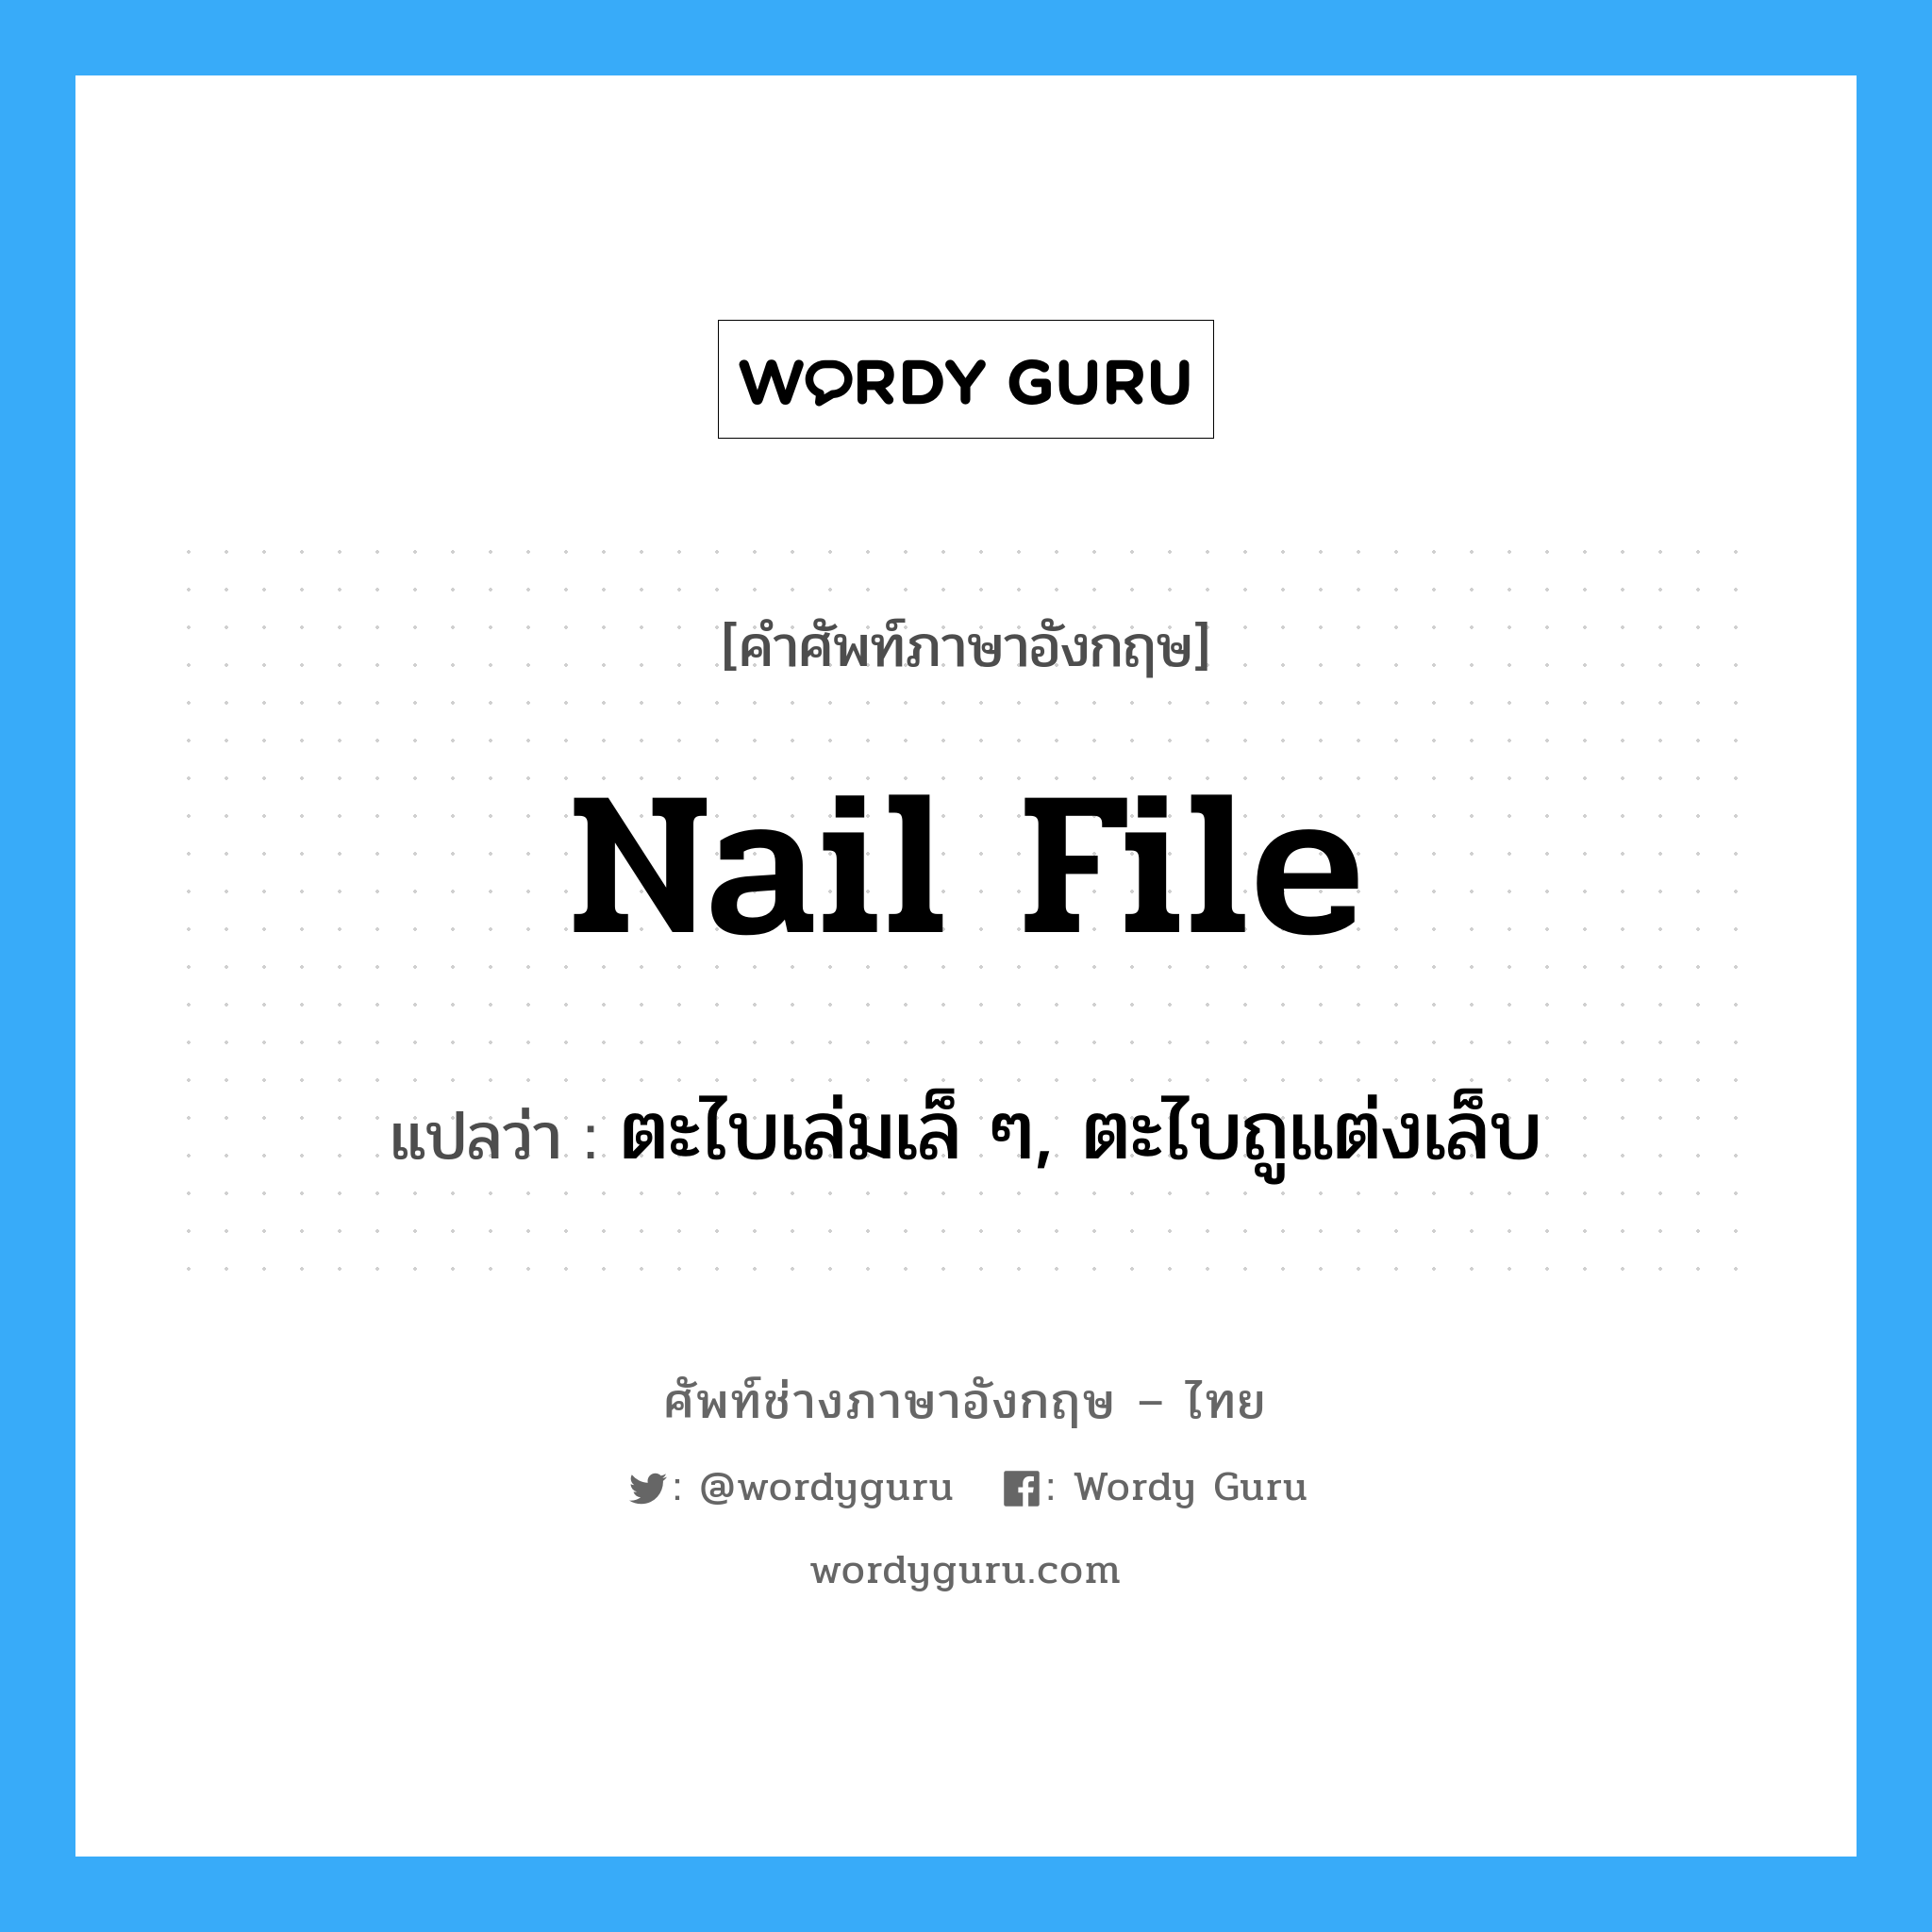 nail file แปลว่า?, คำศัพท์ช่างภาษาอังกฤษ - ไทย nail file คำศัพท์ภาษาอังกฤษ nail file แปลว่า ตะไบเล่มเล็ ๆ, ตะไบถูแต่งเล็บ